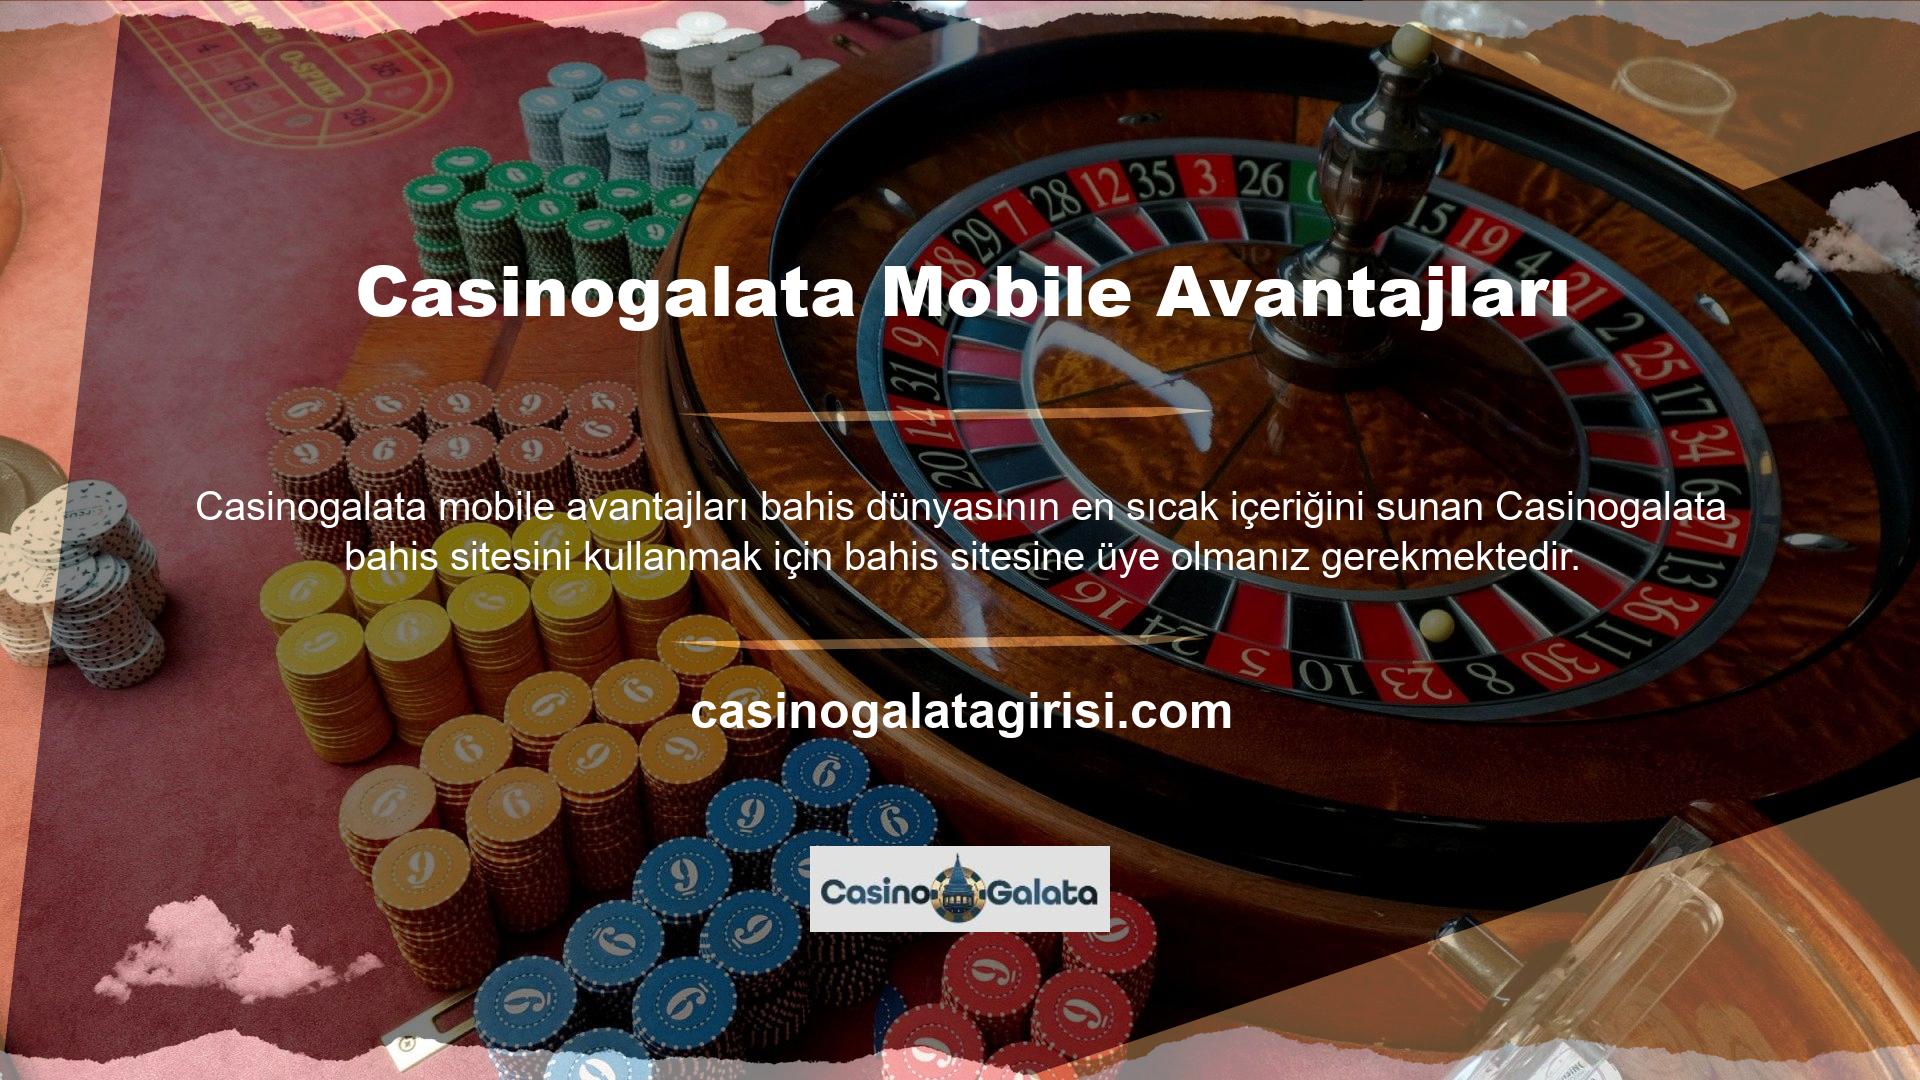 Casinogalata mobil uygulamasını kolayca kullanabilmek için bahis sitesine üye olmanız gerekmektedir